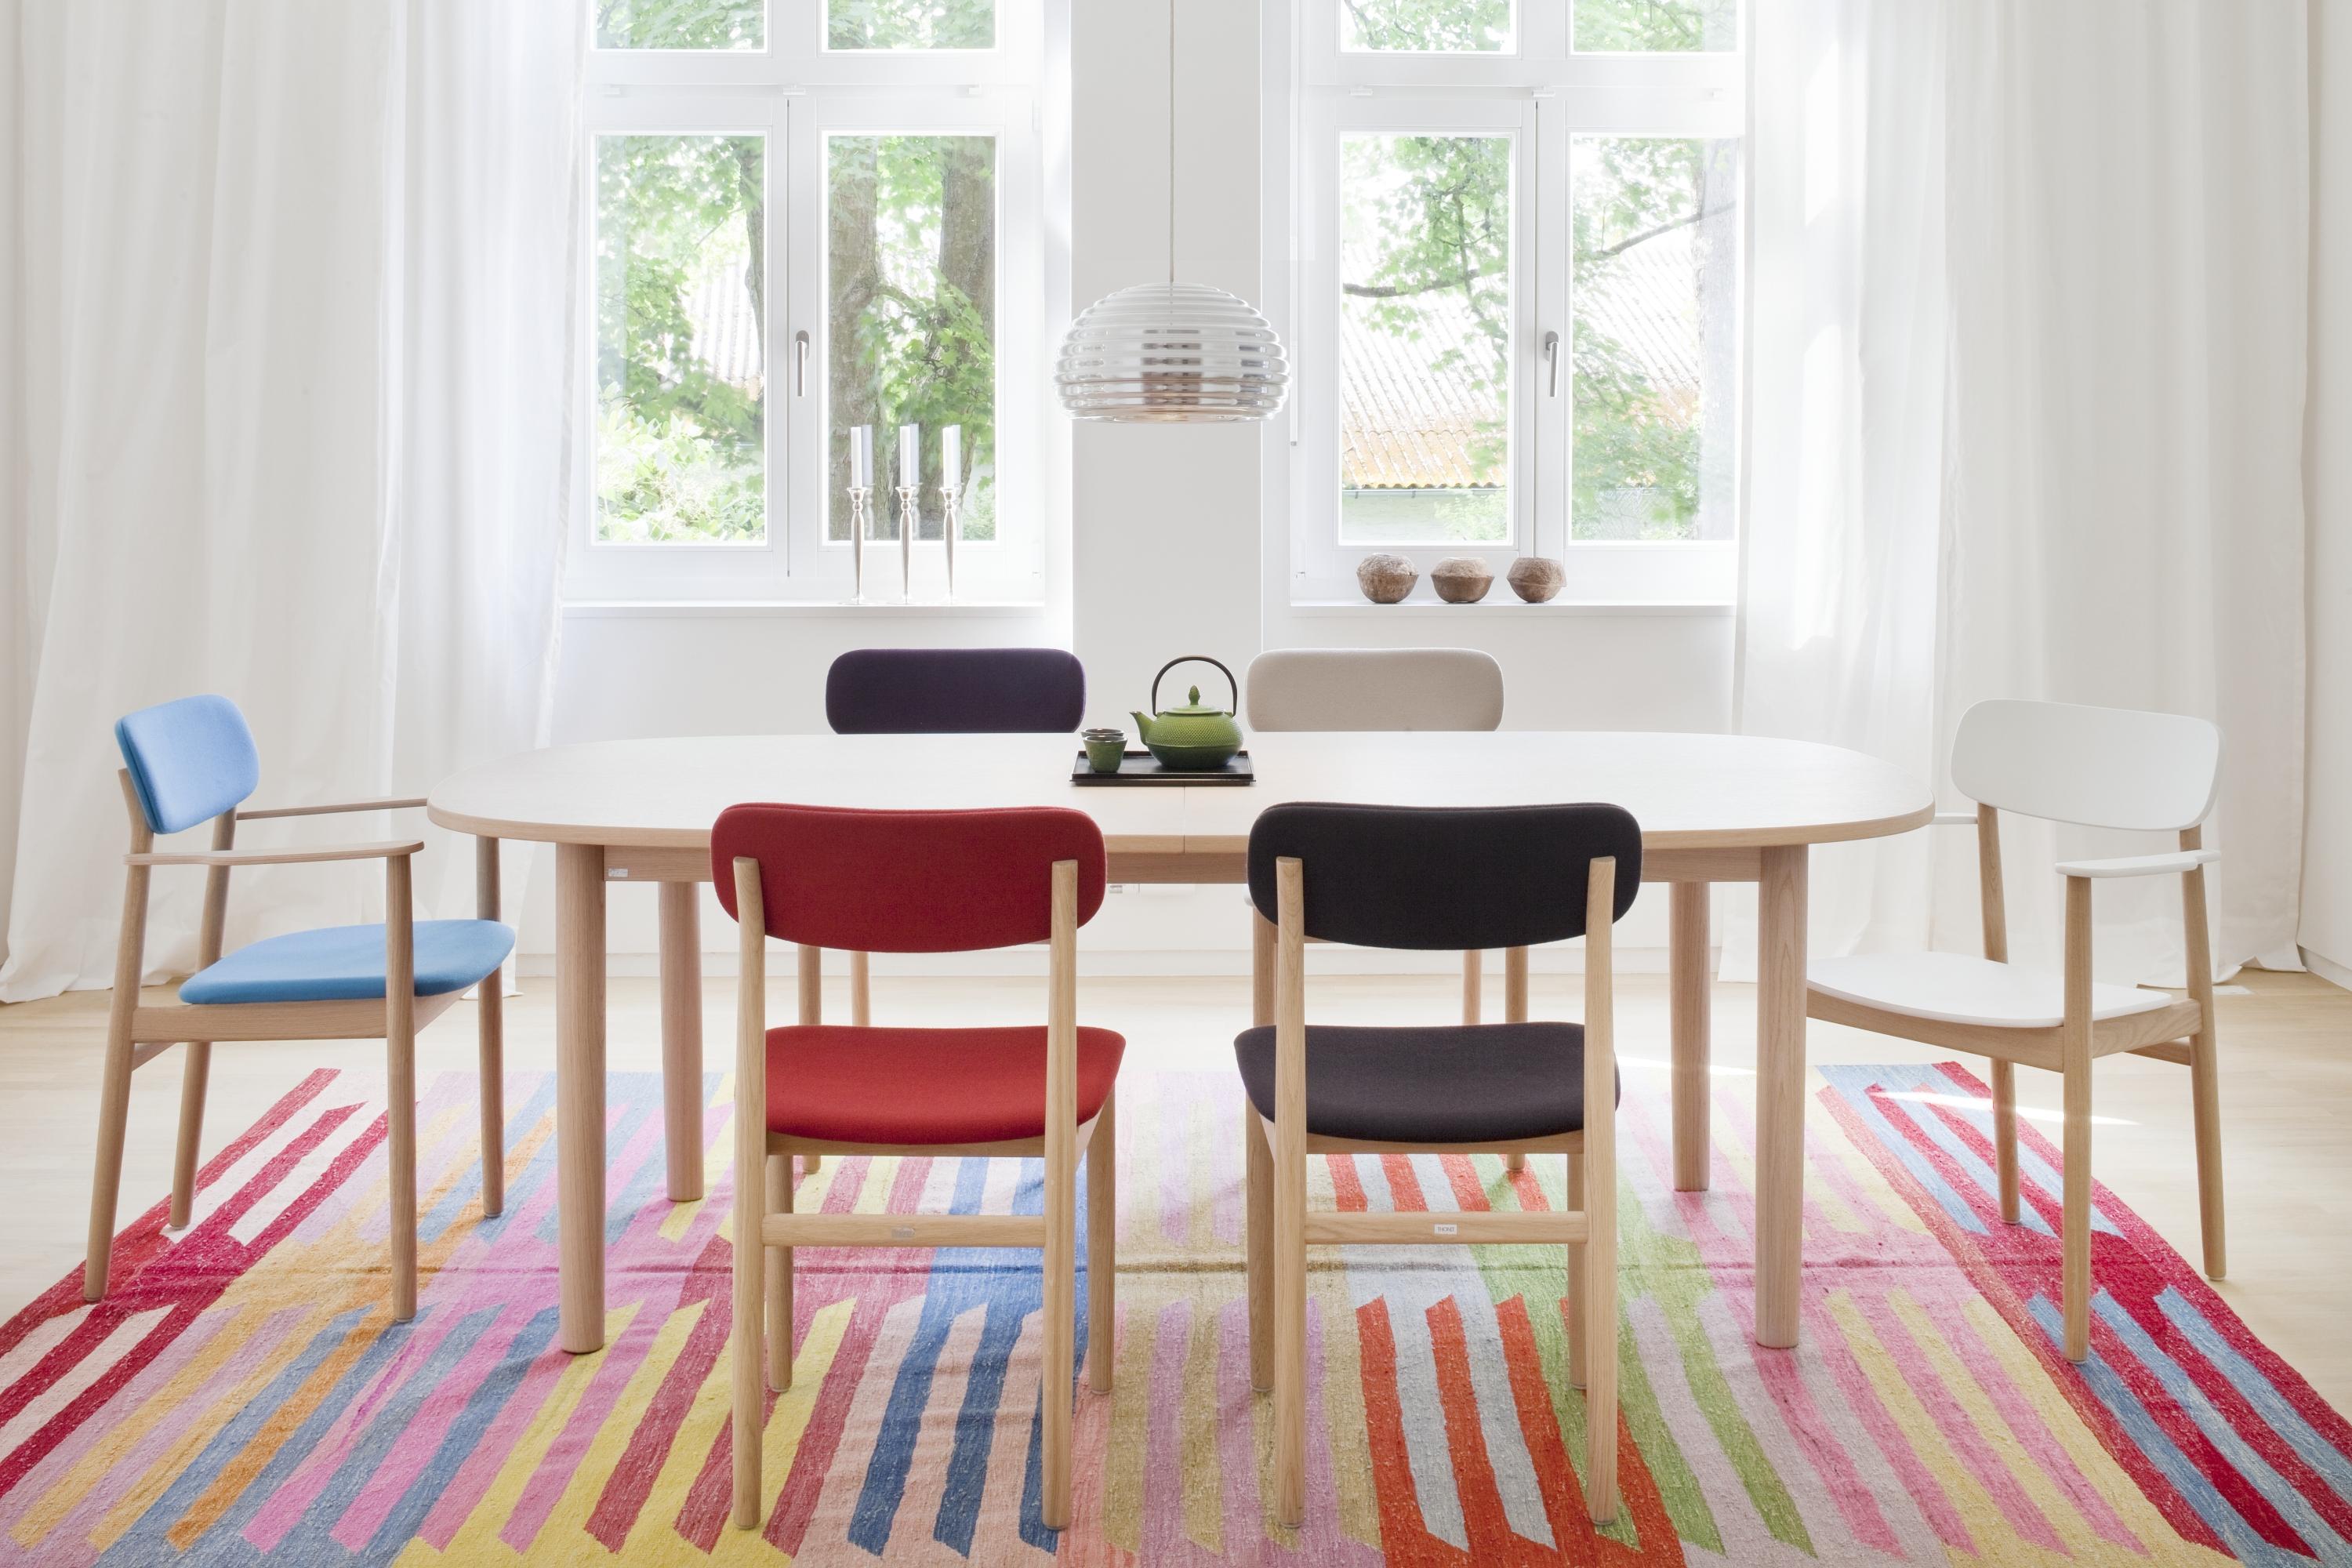 Bunte Stühle im Esszimmer #stuhl #teppich #bunterteppich #weißerstuhl #gestreifterteppich #lampe ©Thonet